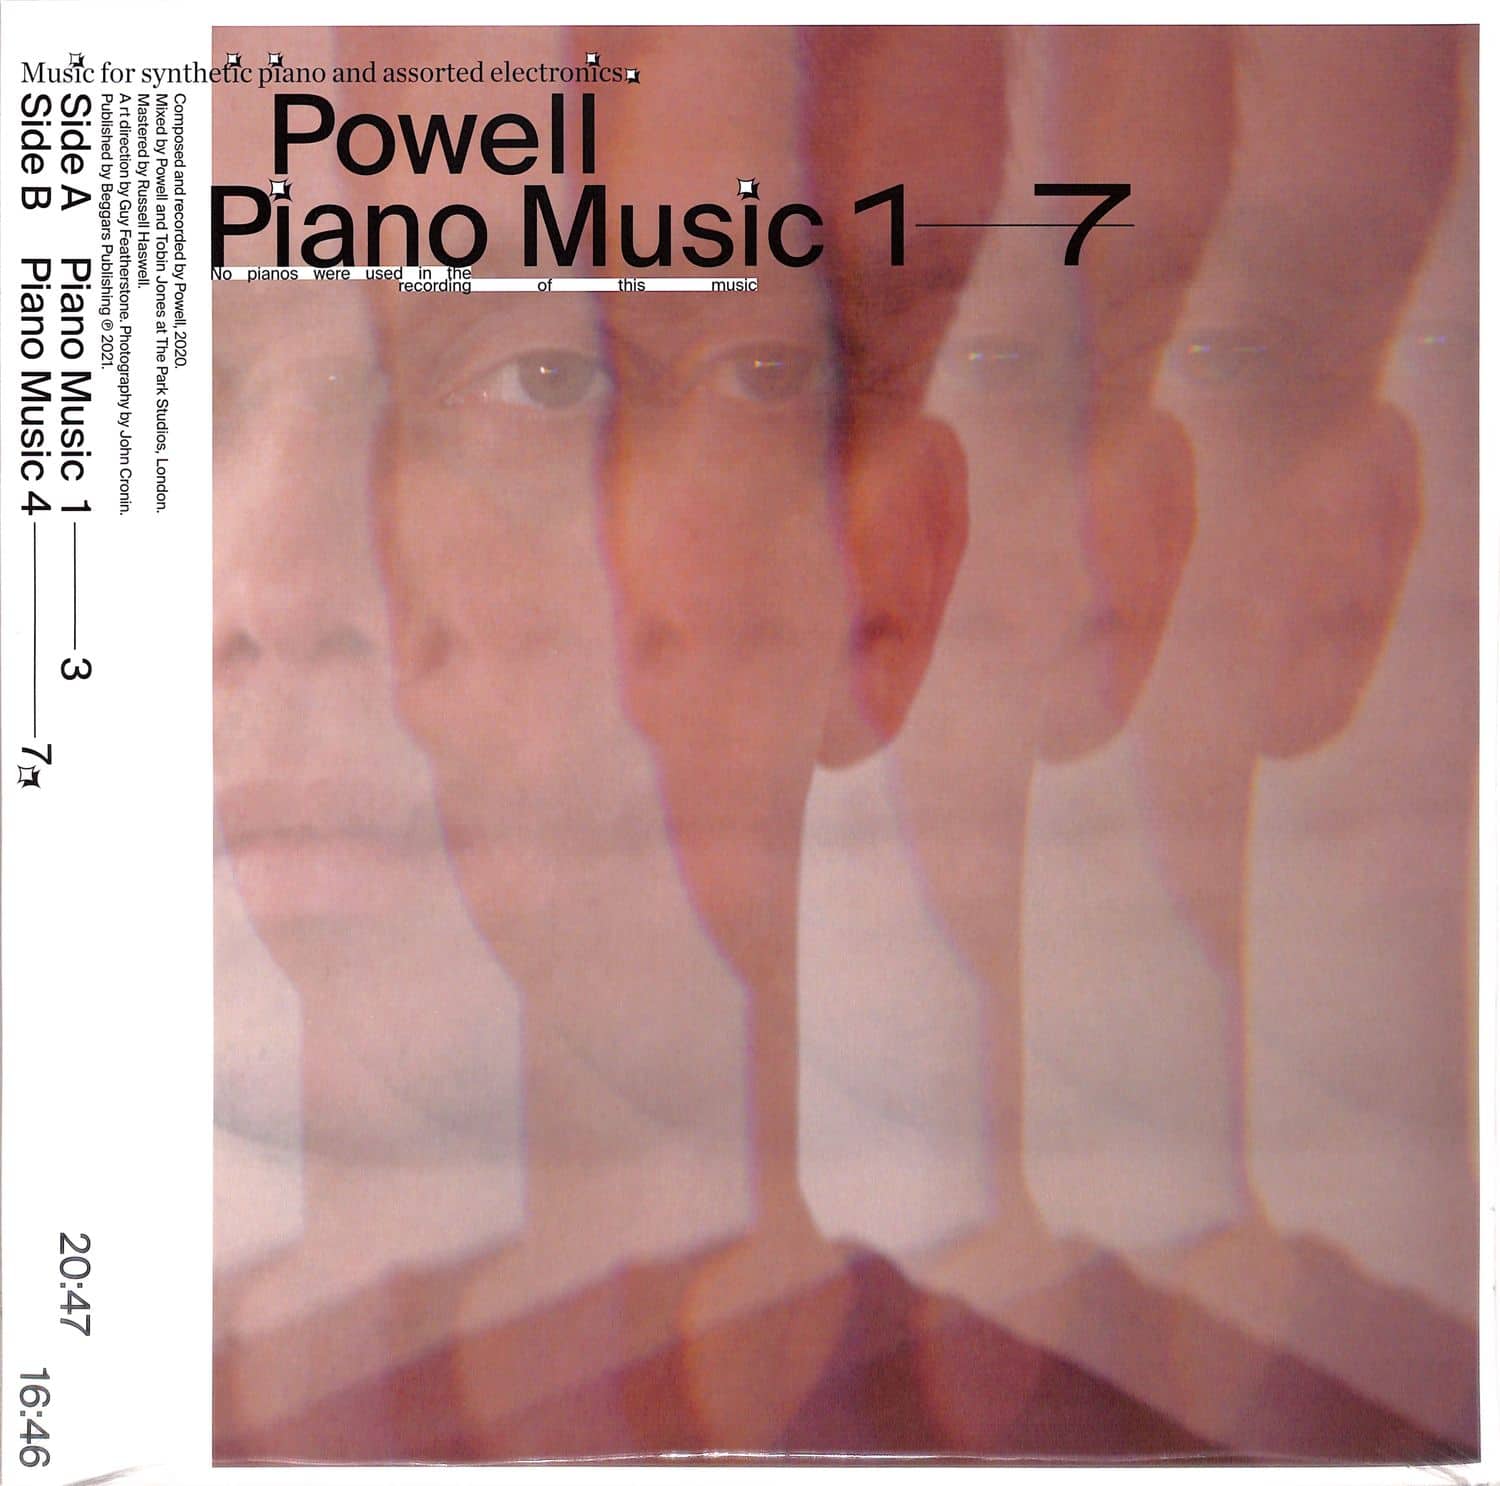 Powell - PIANO MUSIC 